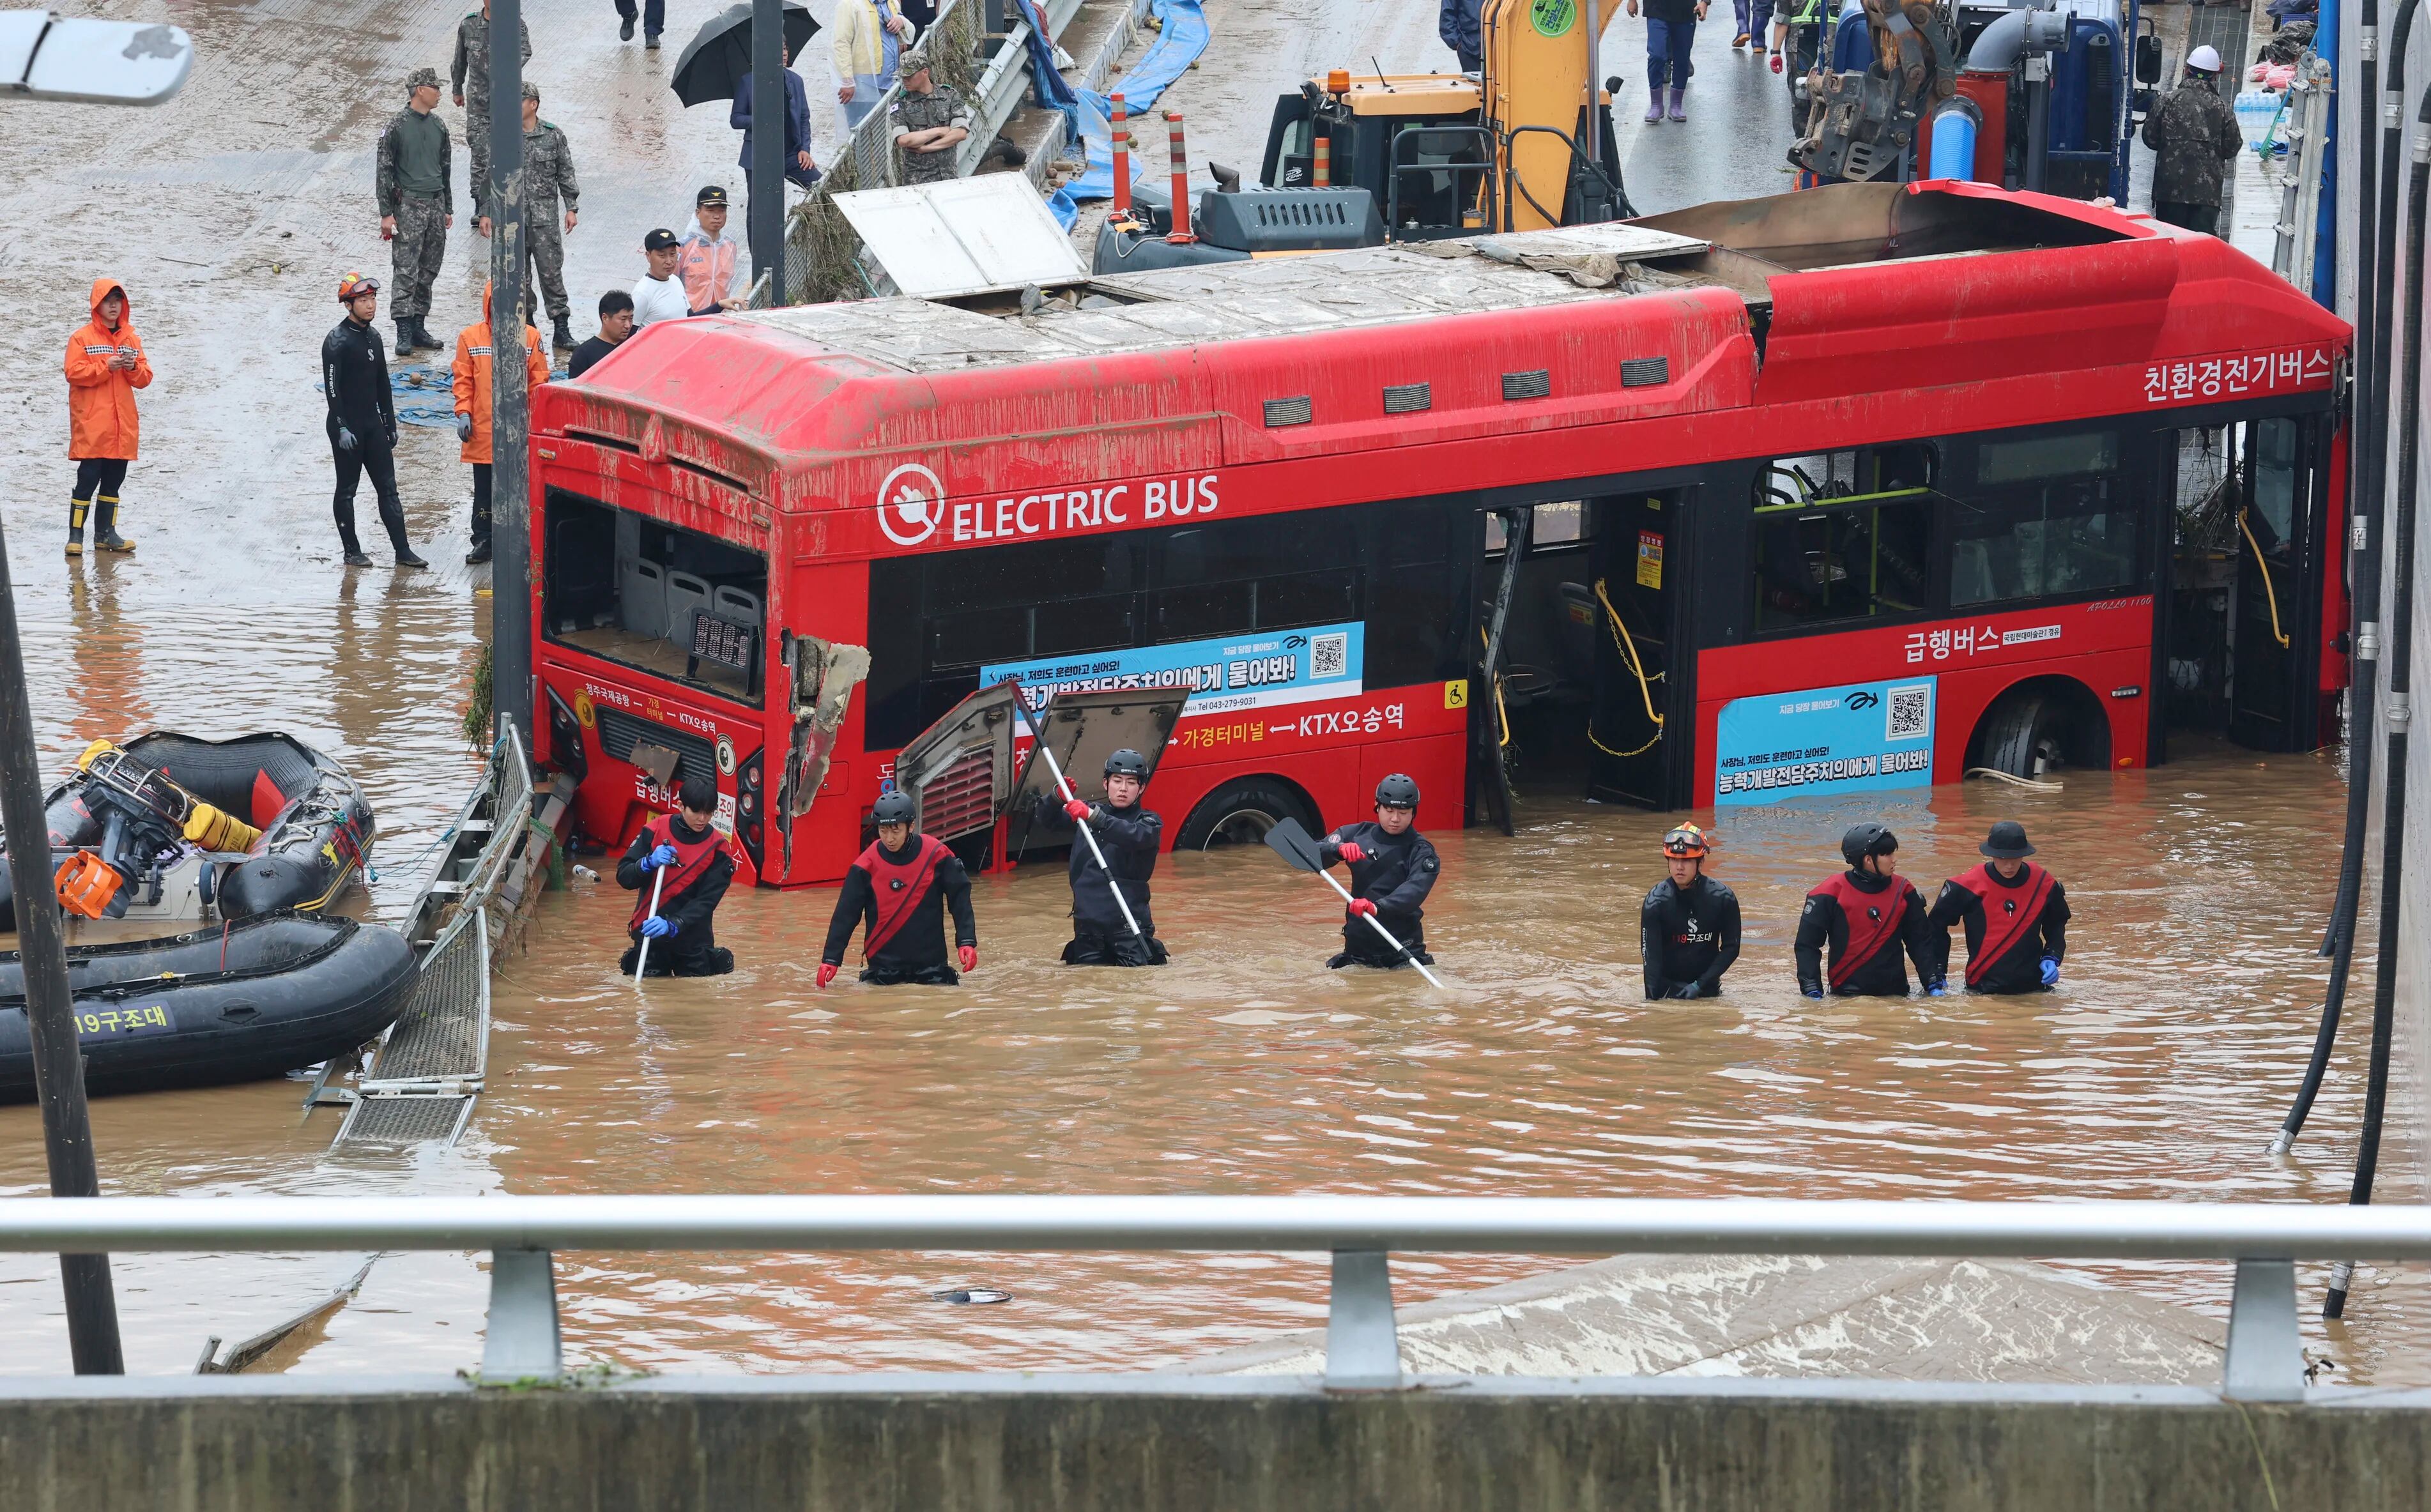 Búsqueda de sobrevivientes en una inundación en Cheongju, Corea del Sur (Kim Ju-hyung/Yonhap via AP)